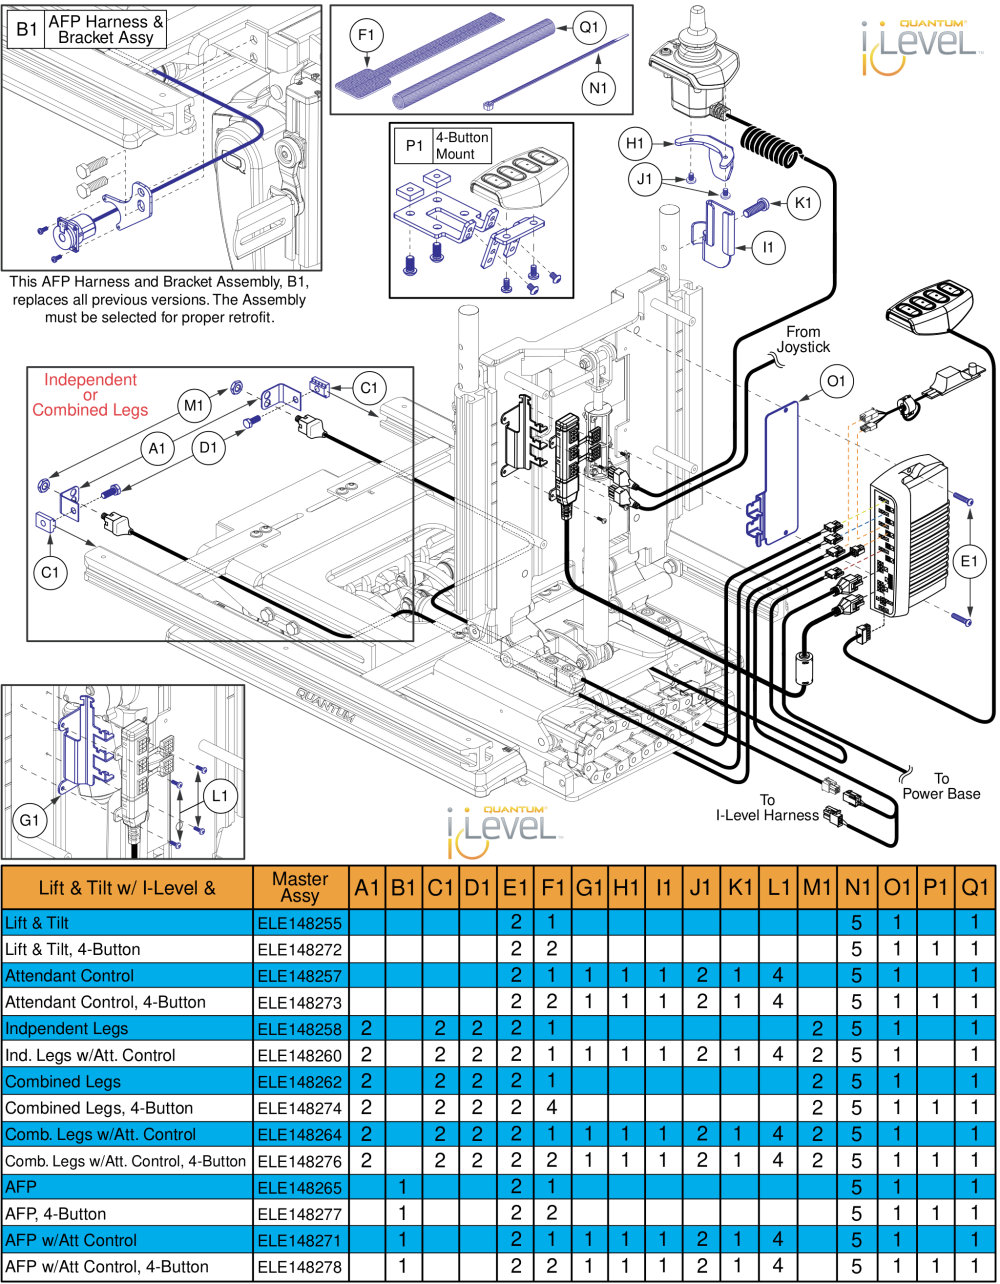 Lift & Tilt Hardware, Q-logic 2 - Reac Lift / I-level parts diagram